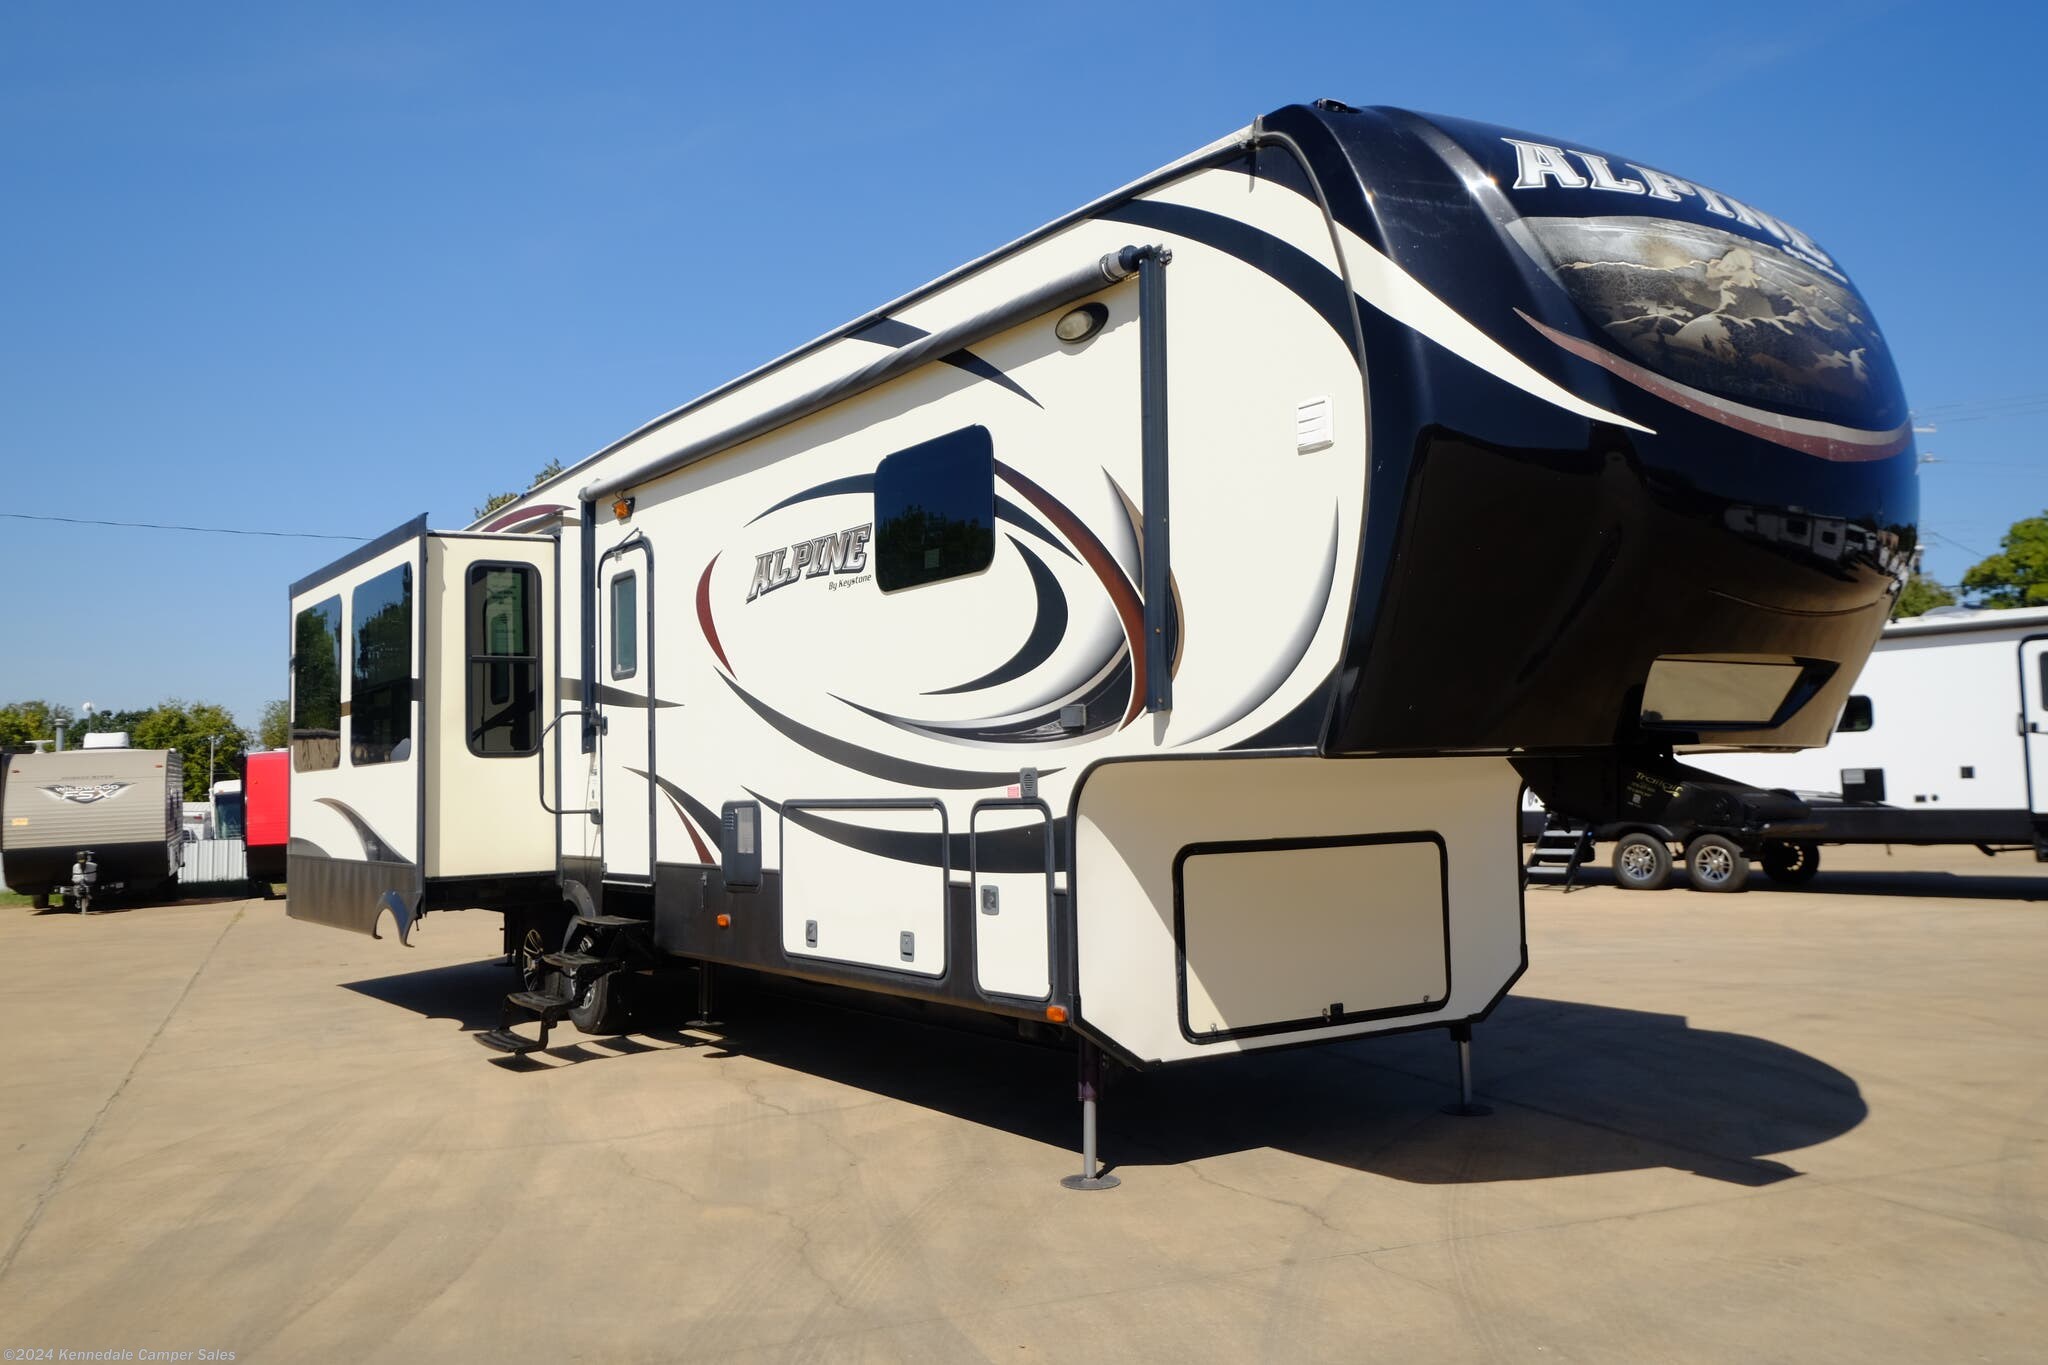 2014 Keystone Alpine 3535RE RV for Sale in Kennedale, TX 76060 | 780537 ...